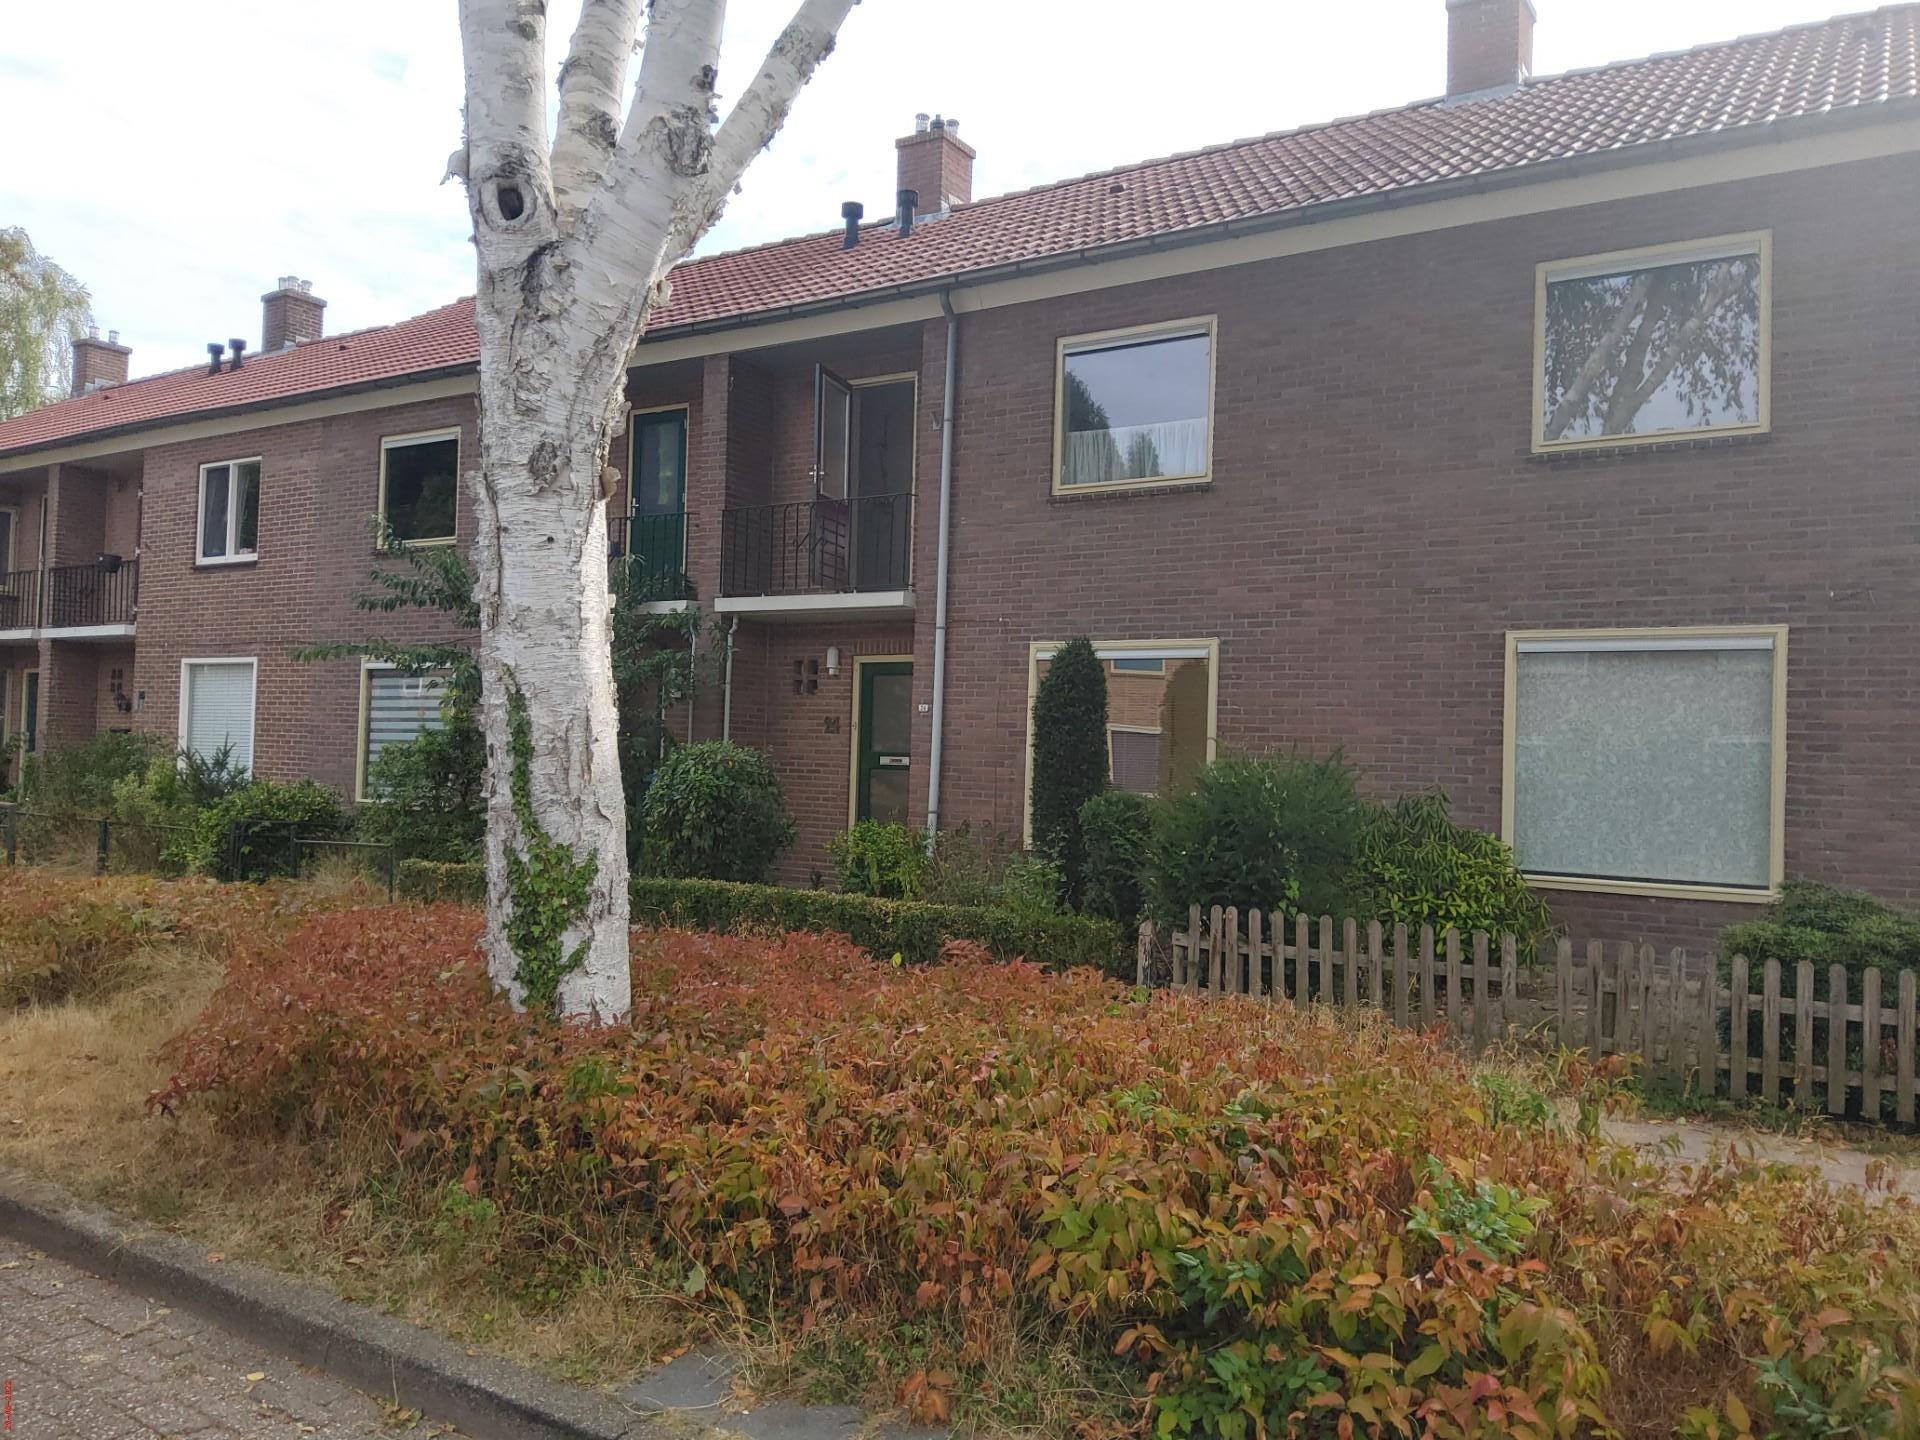 Eekhoornstraat 24, 6865 WZ Doorwerth, Nederland